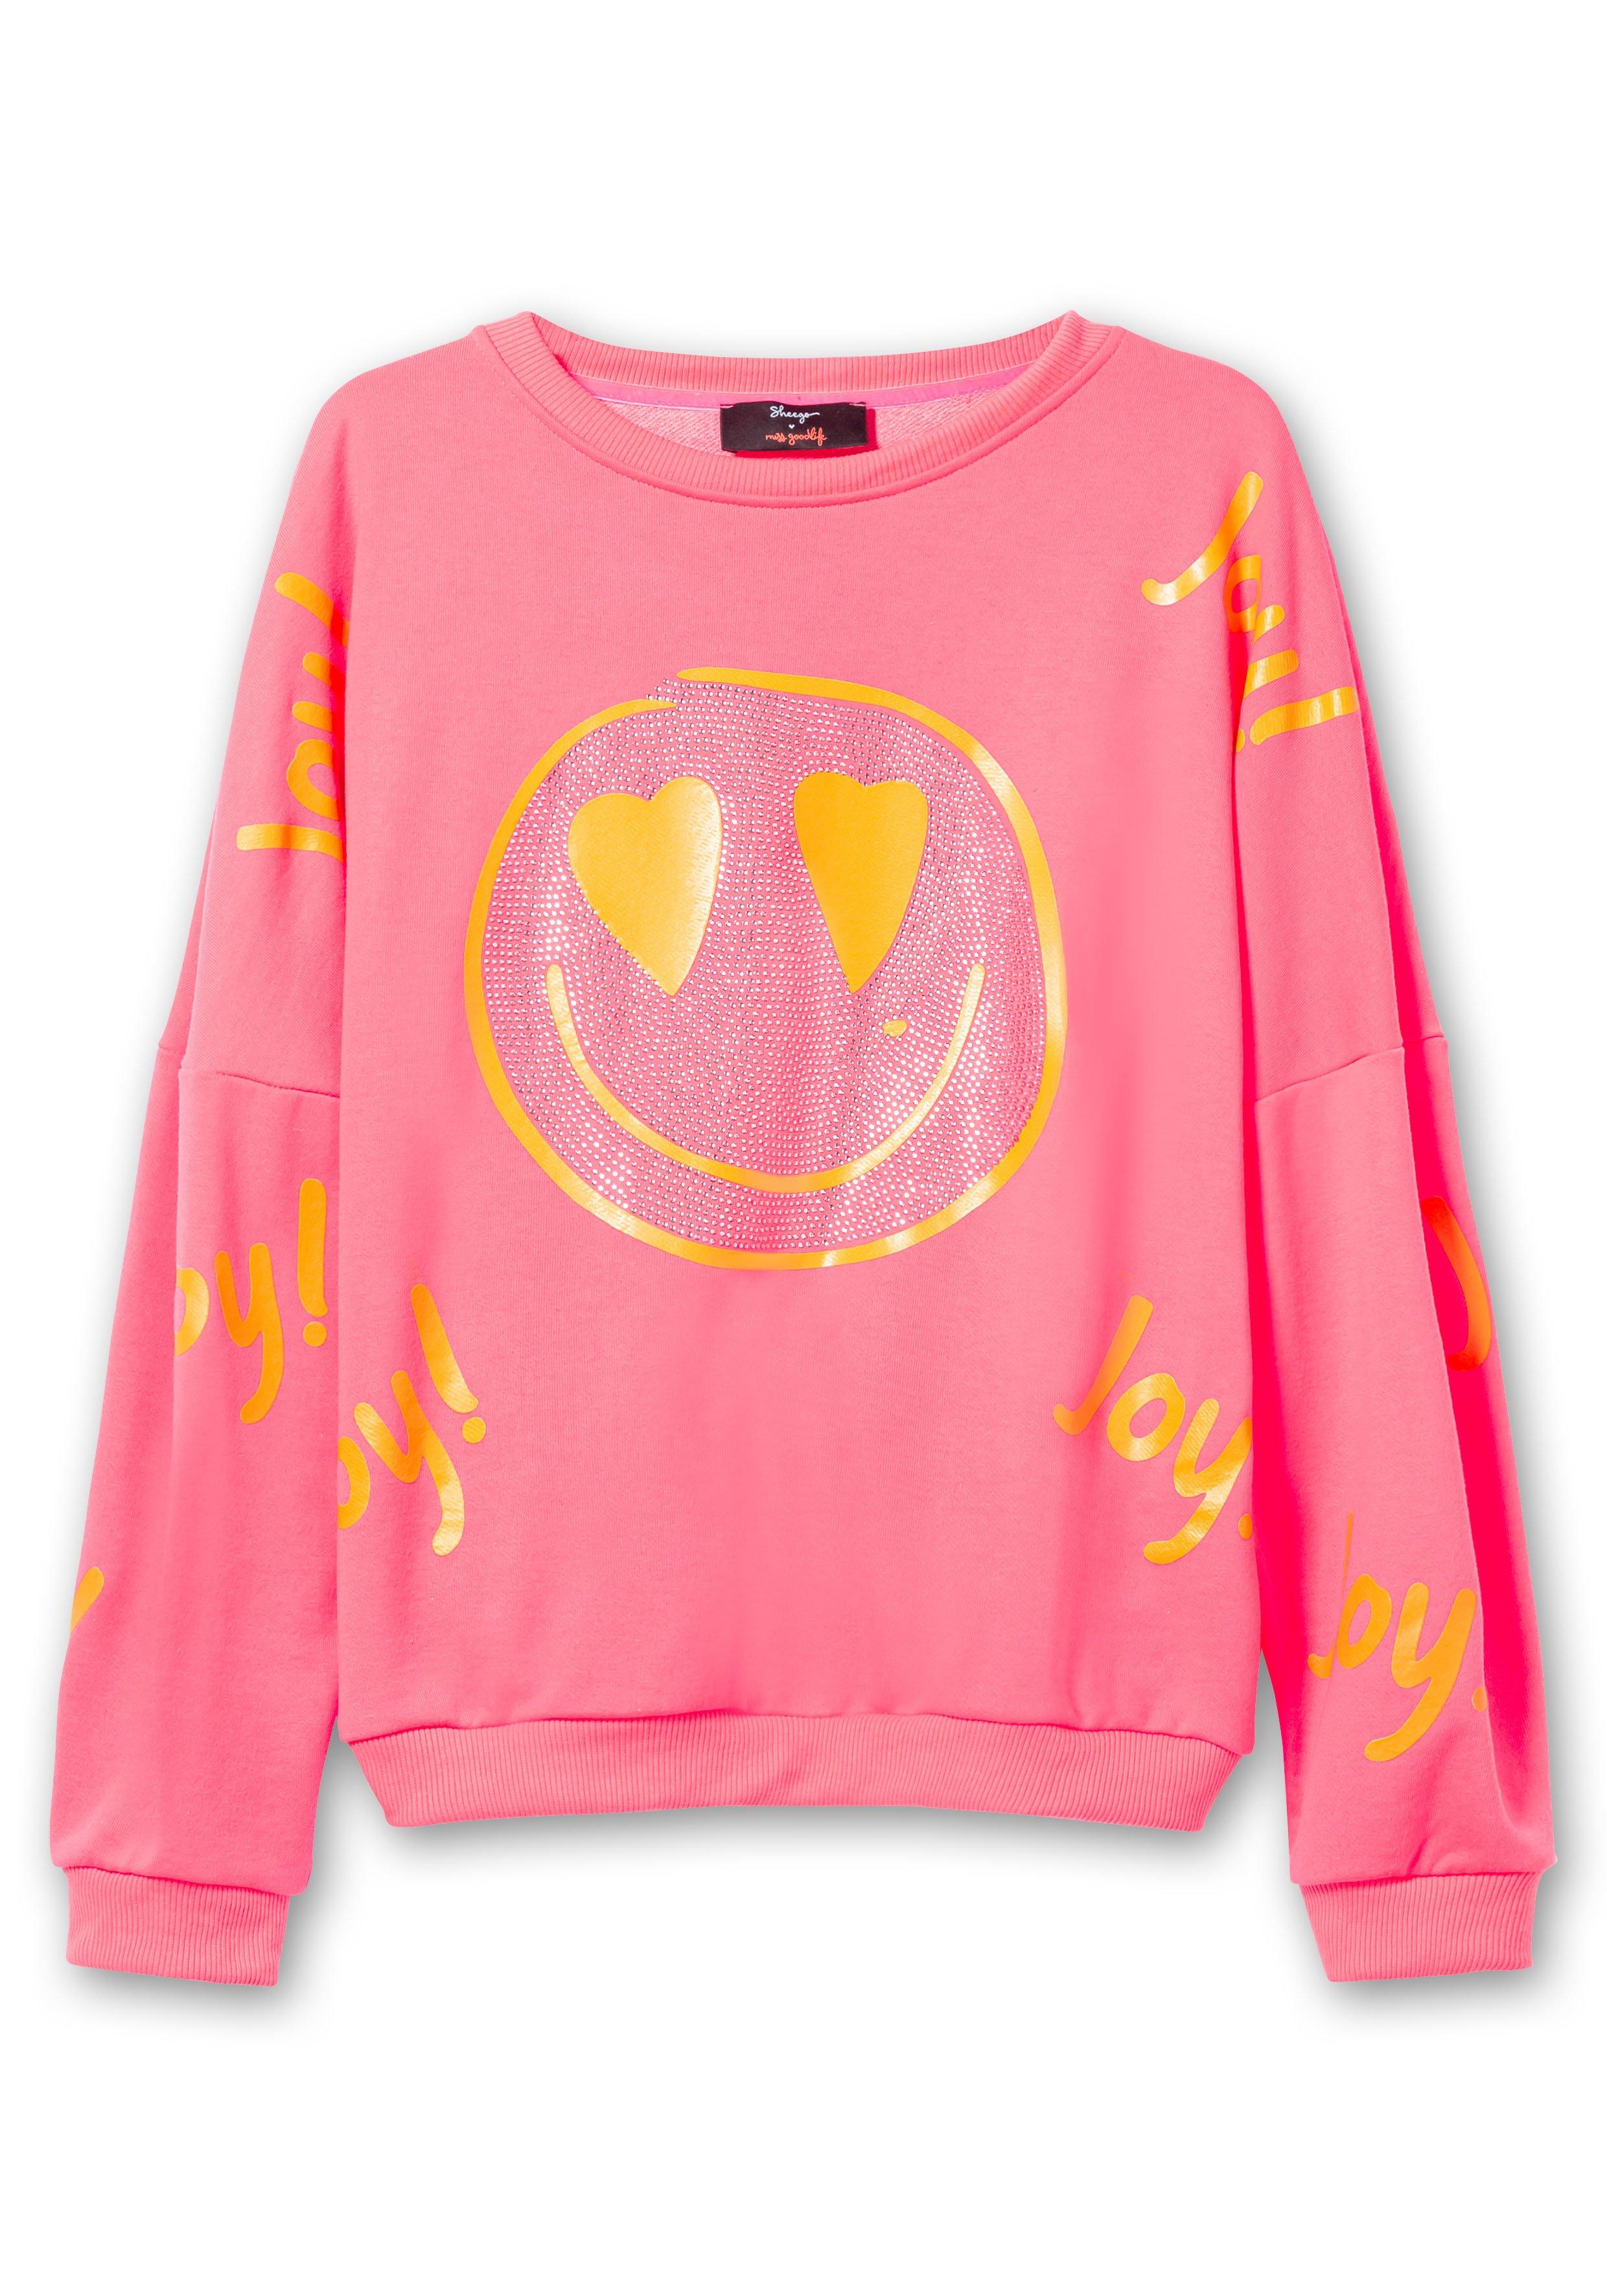 Sweatshirt mit Smiley-Frontdruck und Glitzersteinen sheego pink - 